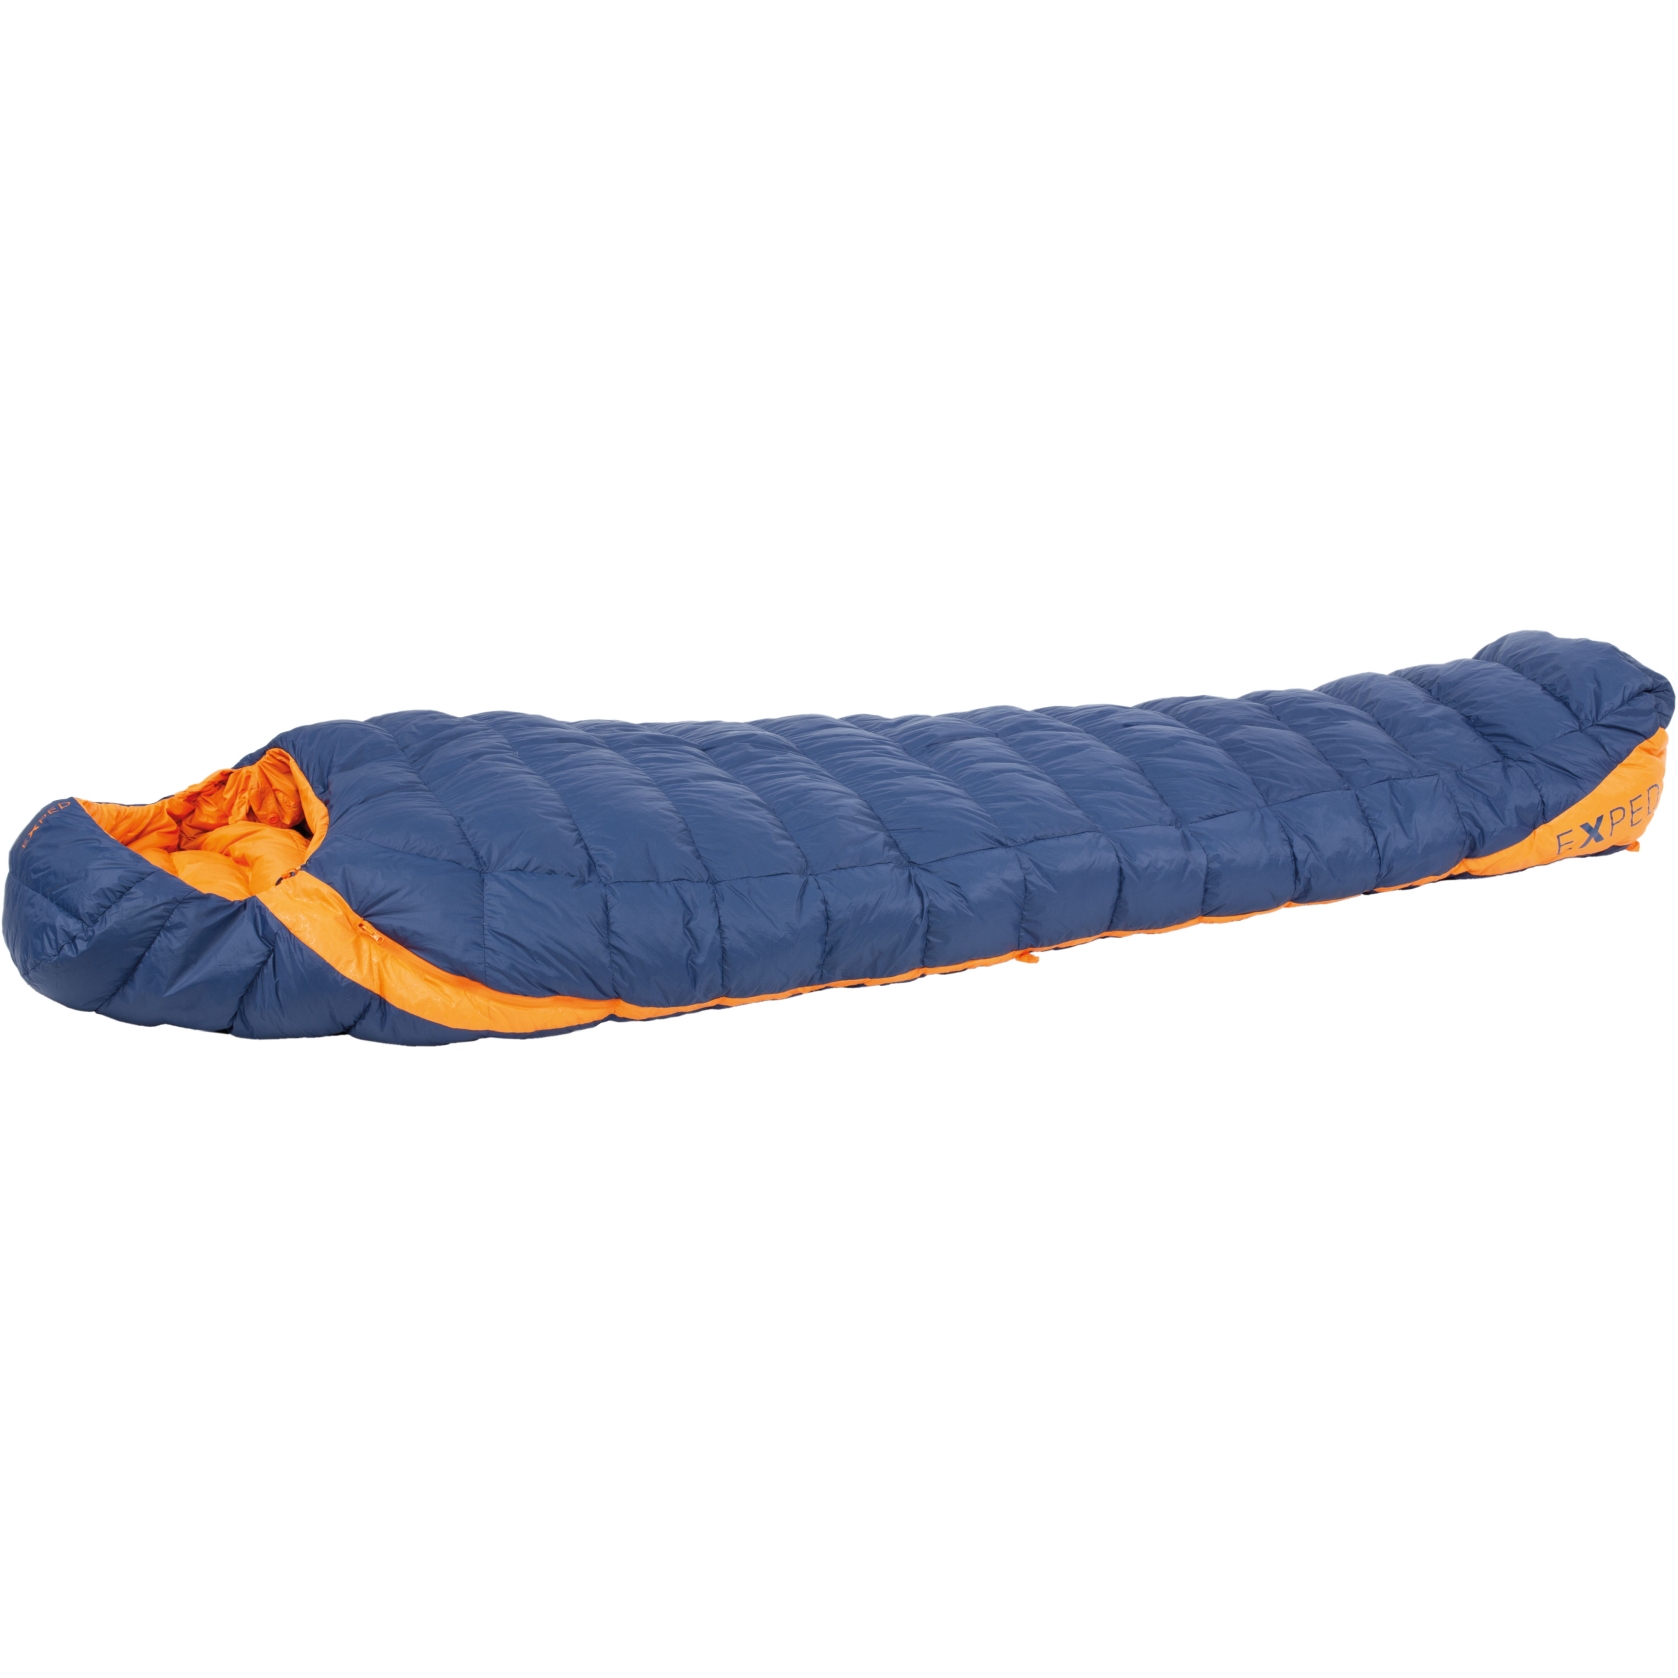 Produktbild von Exped Comfort 0° Schlafsack - L - blue/orange